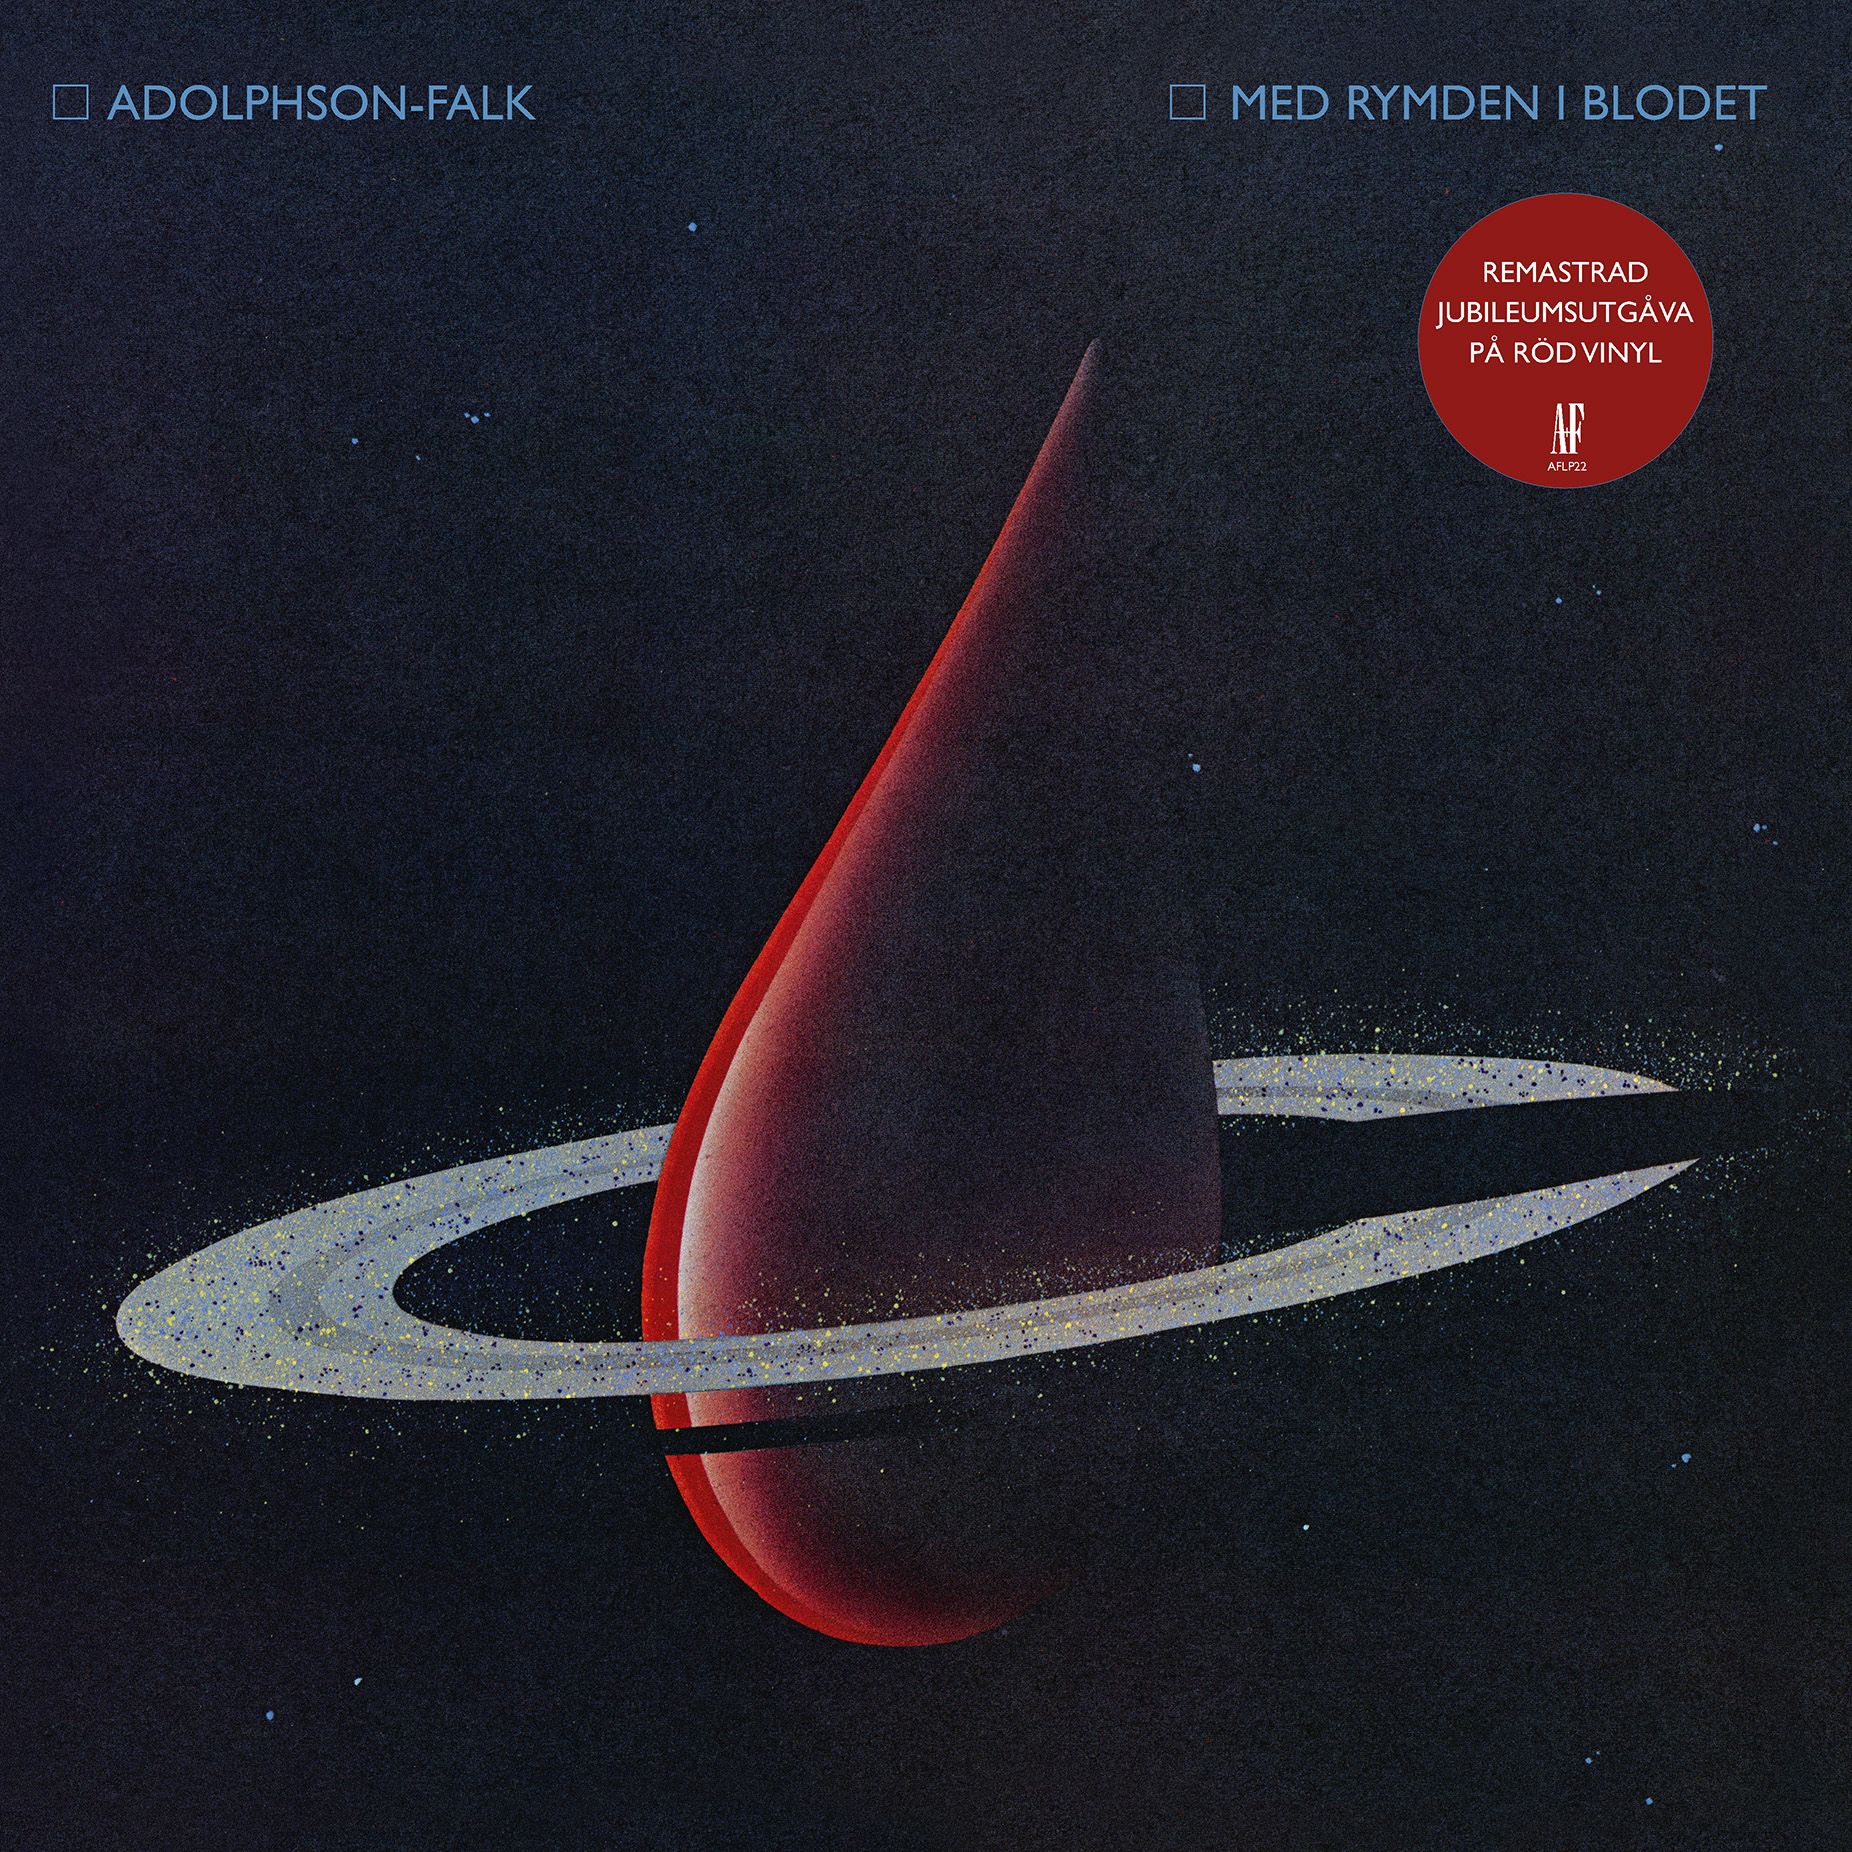 Adolphson & Falk - Med Rymden I Blodet (R d vinyl)